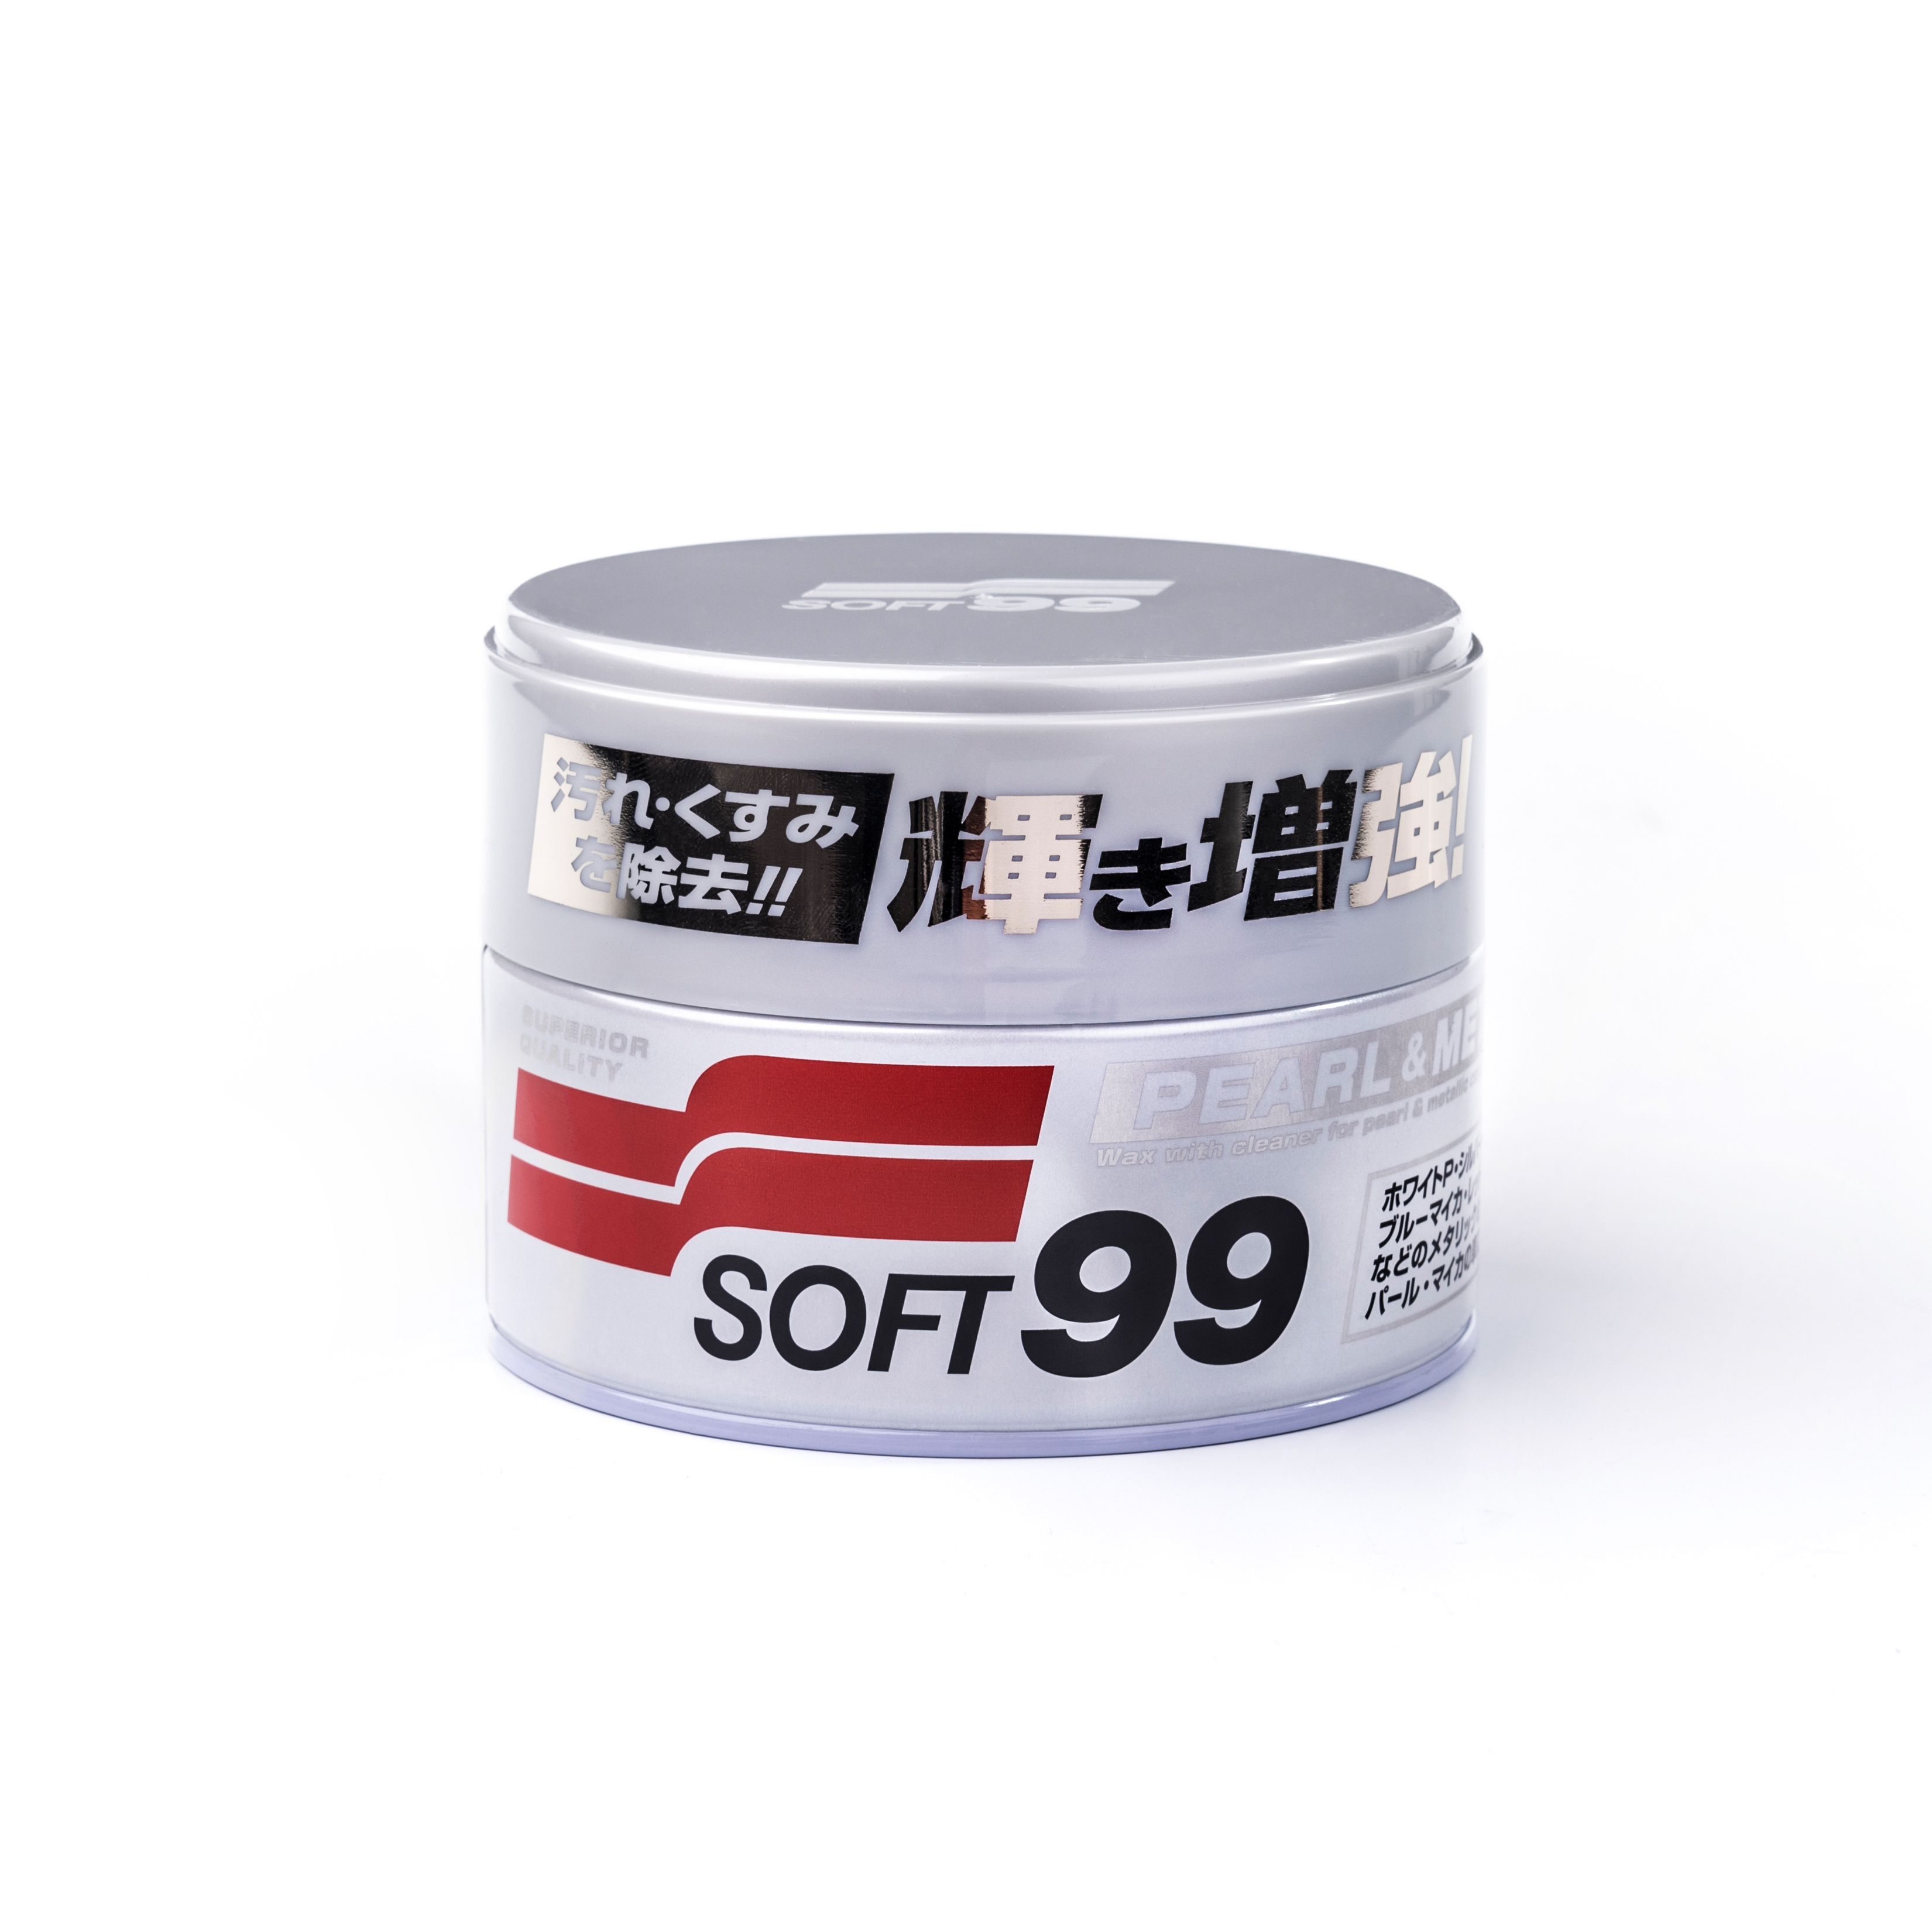 Bilvoks Soft99 Pearl & Metallic Soft Wax, 320 g, Soft99 Pearl & Metallic Soft Wax